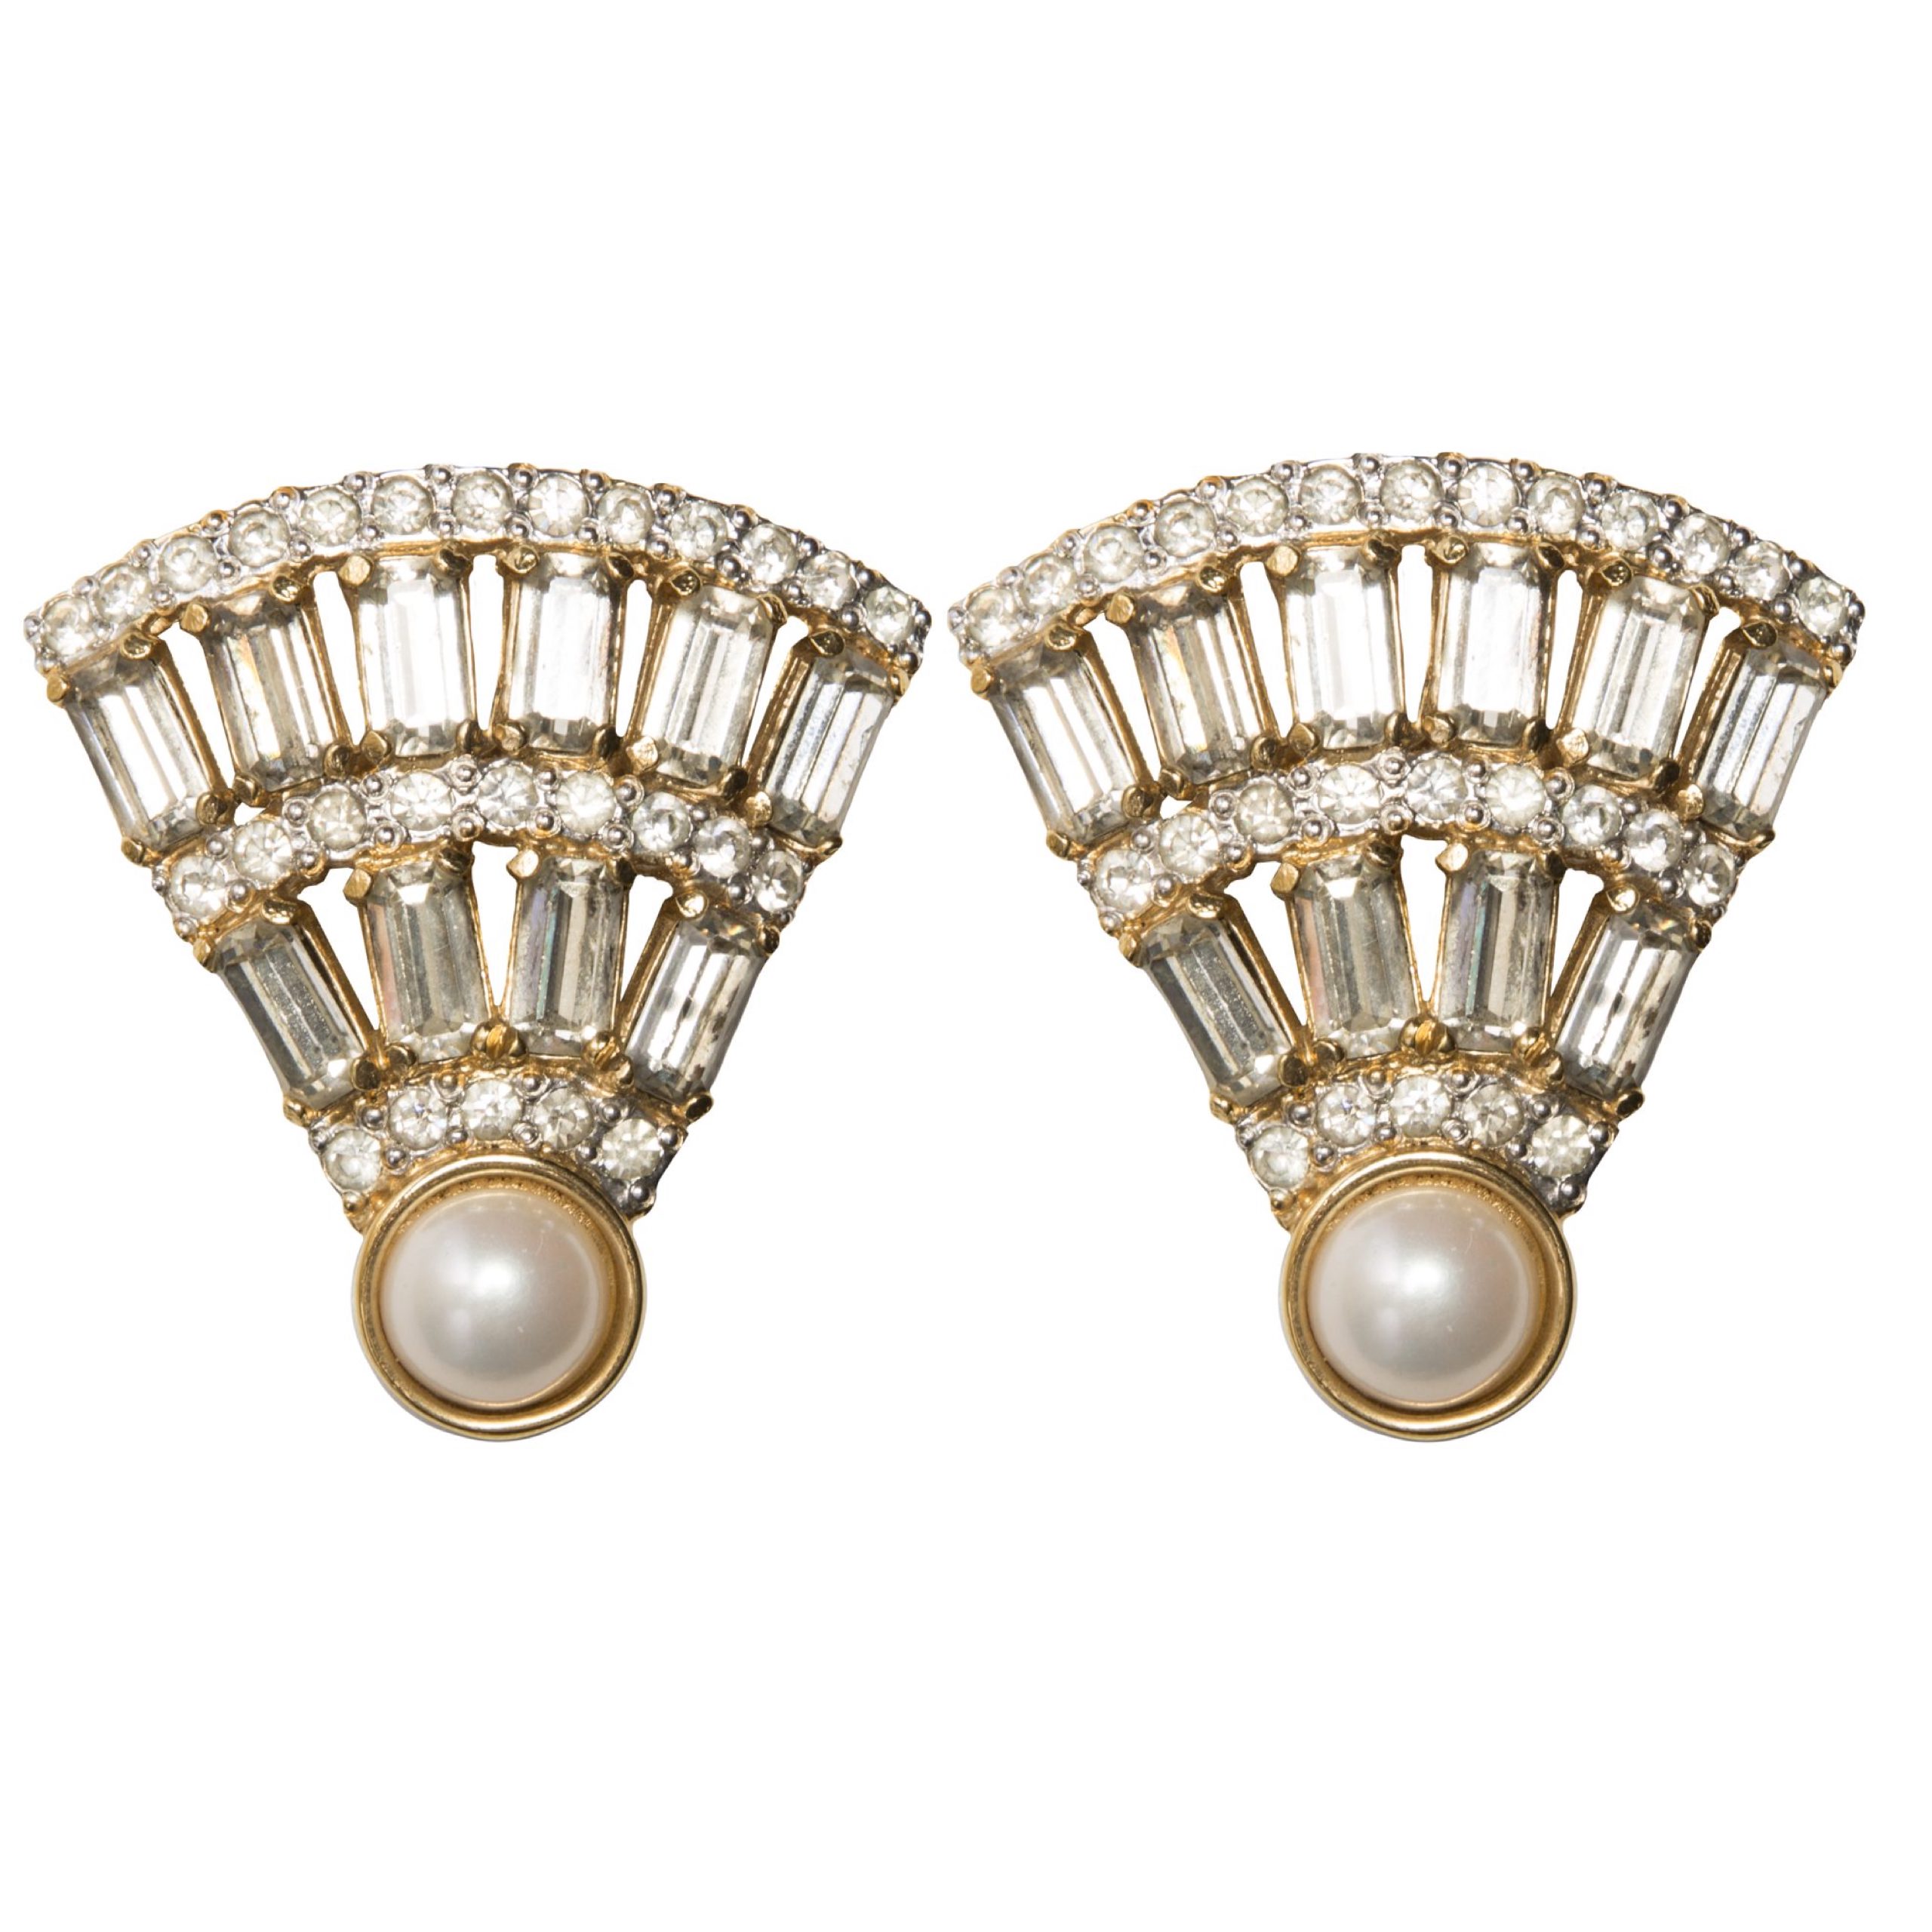 Vintage crystal fan shape earrings